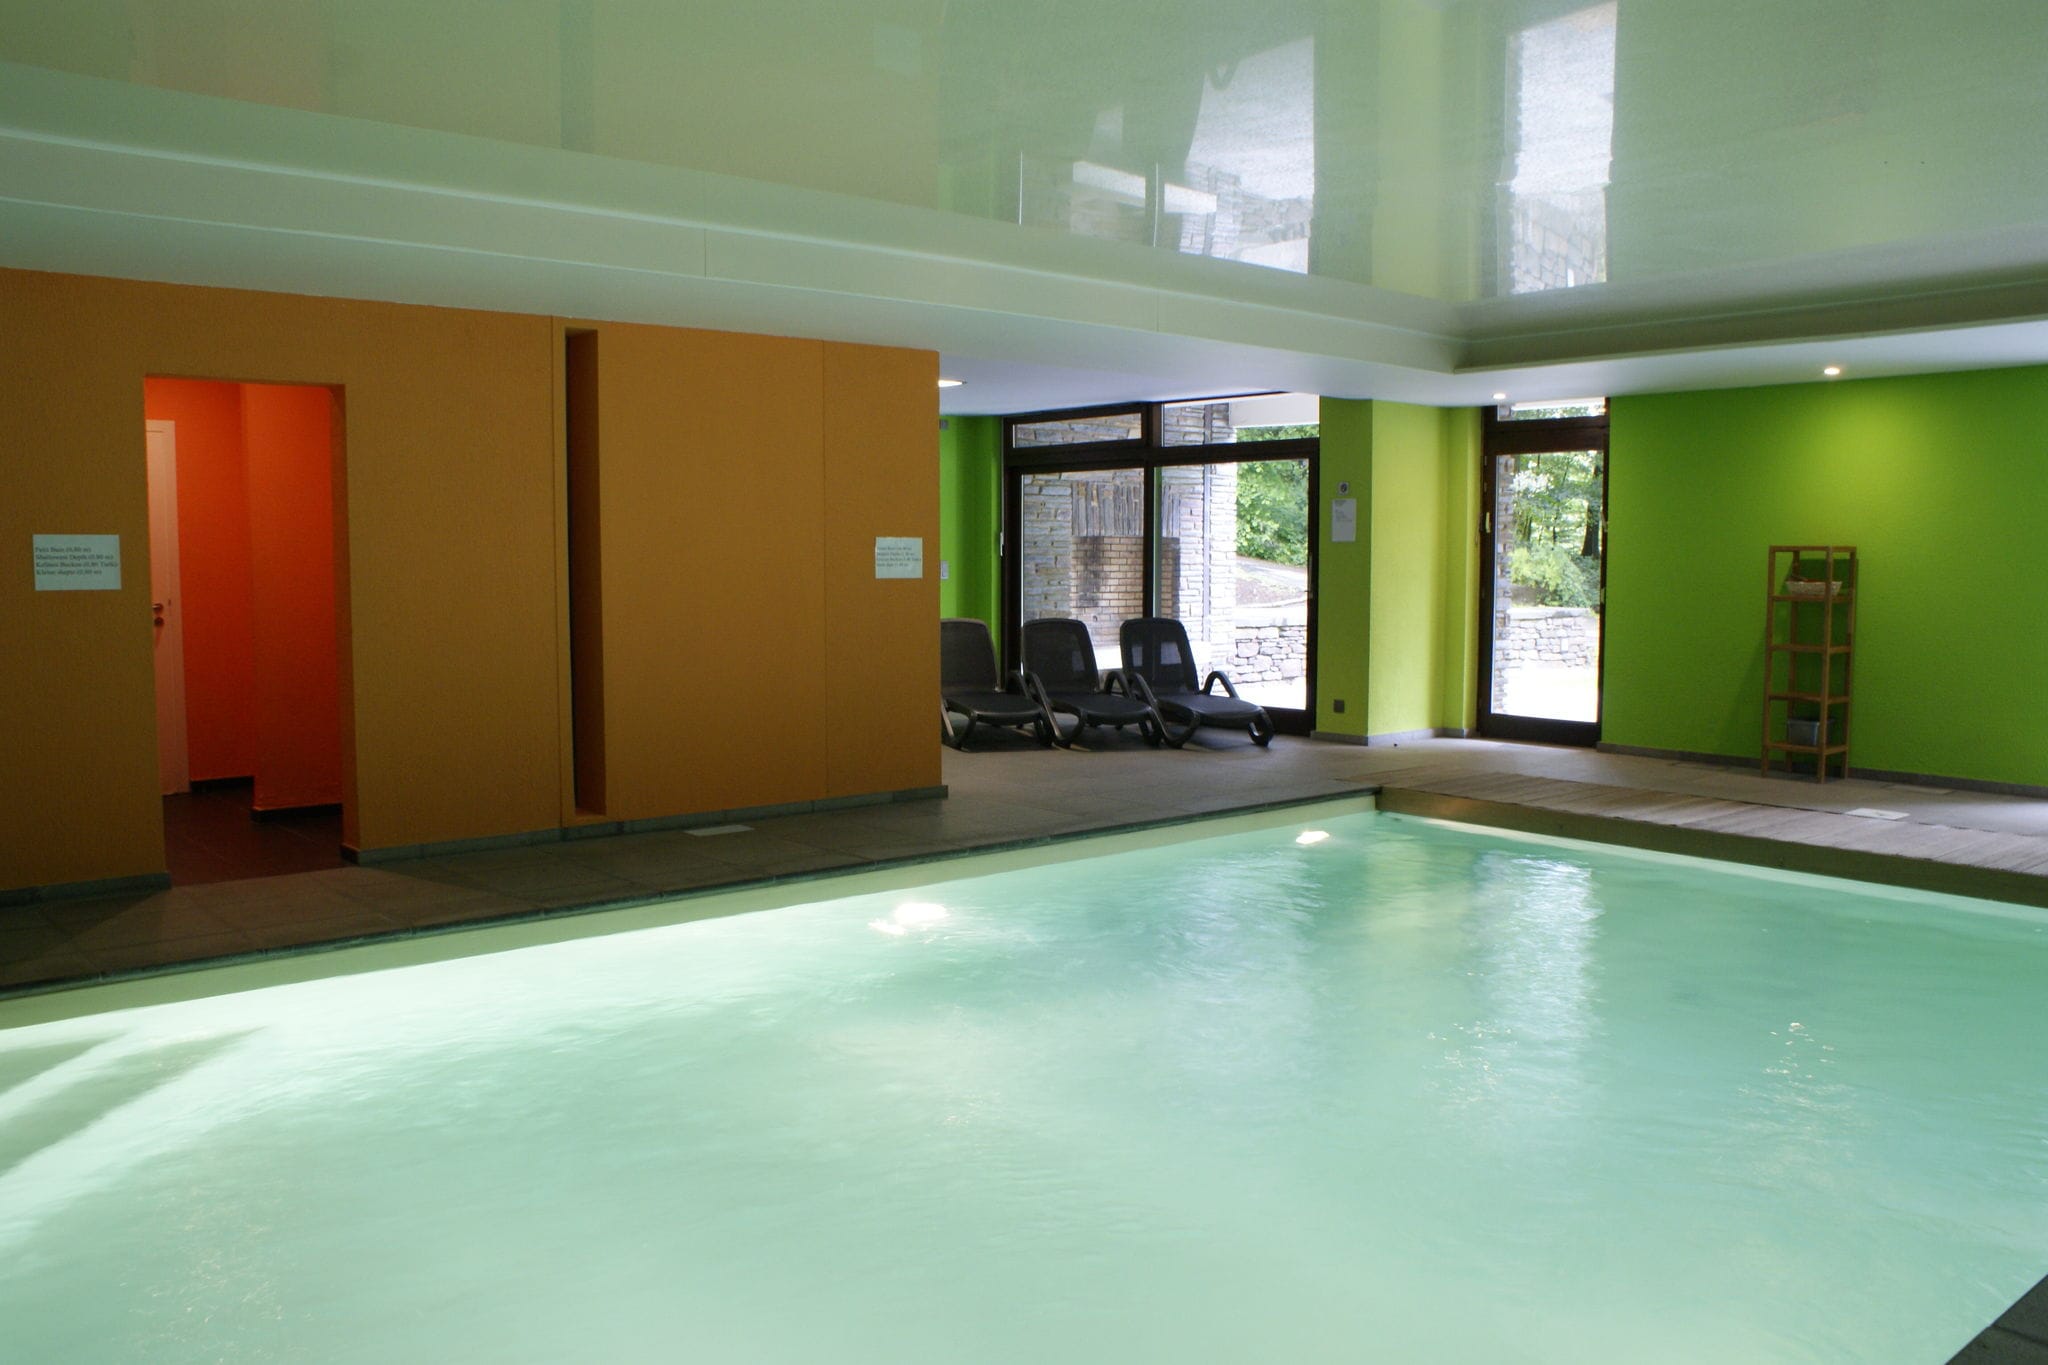 Grote, luxe vakantievilla met binnenzwembad, sauna en fitnessapparatuur